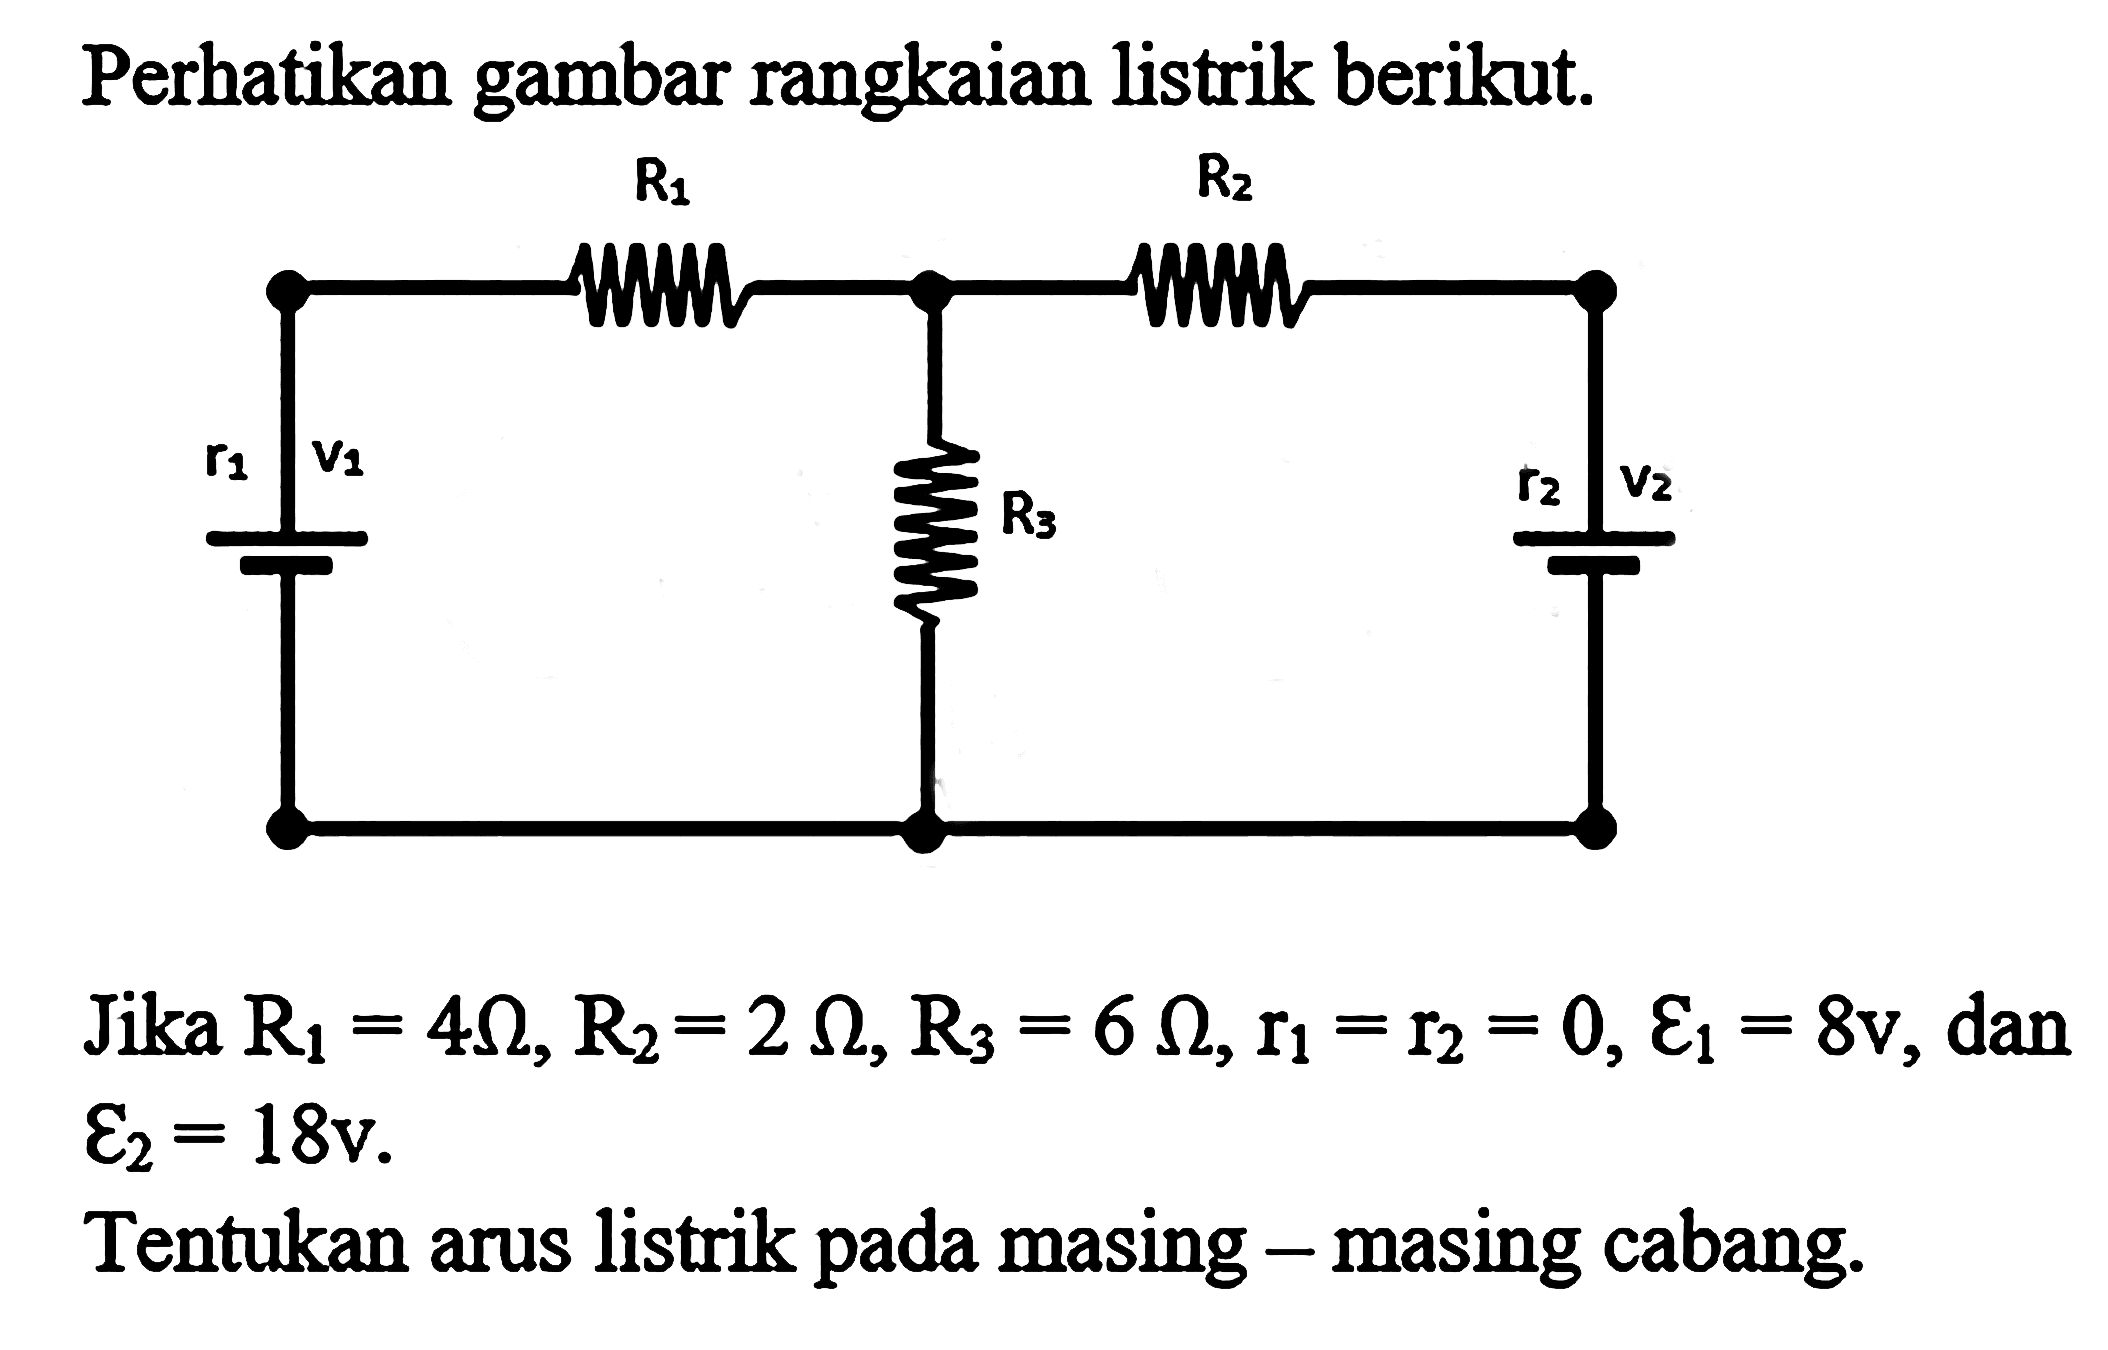 Perhatikan gambar rangkaian listrik berikut. R1= 4 ohm, R2 = 2 ohm, R3=6 ohm, r1=r2=0, epsilon 1 = 8v , dan epsilon 2 = 18 v. Tentukan arus listrik pada masing - masing cabang.